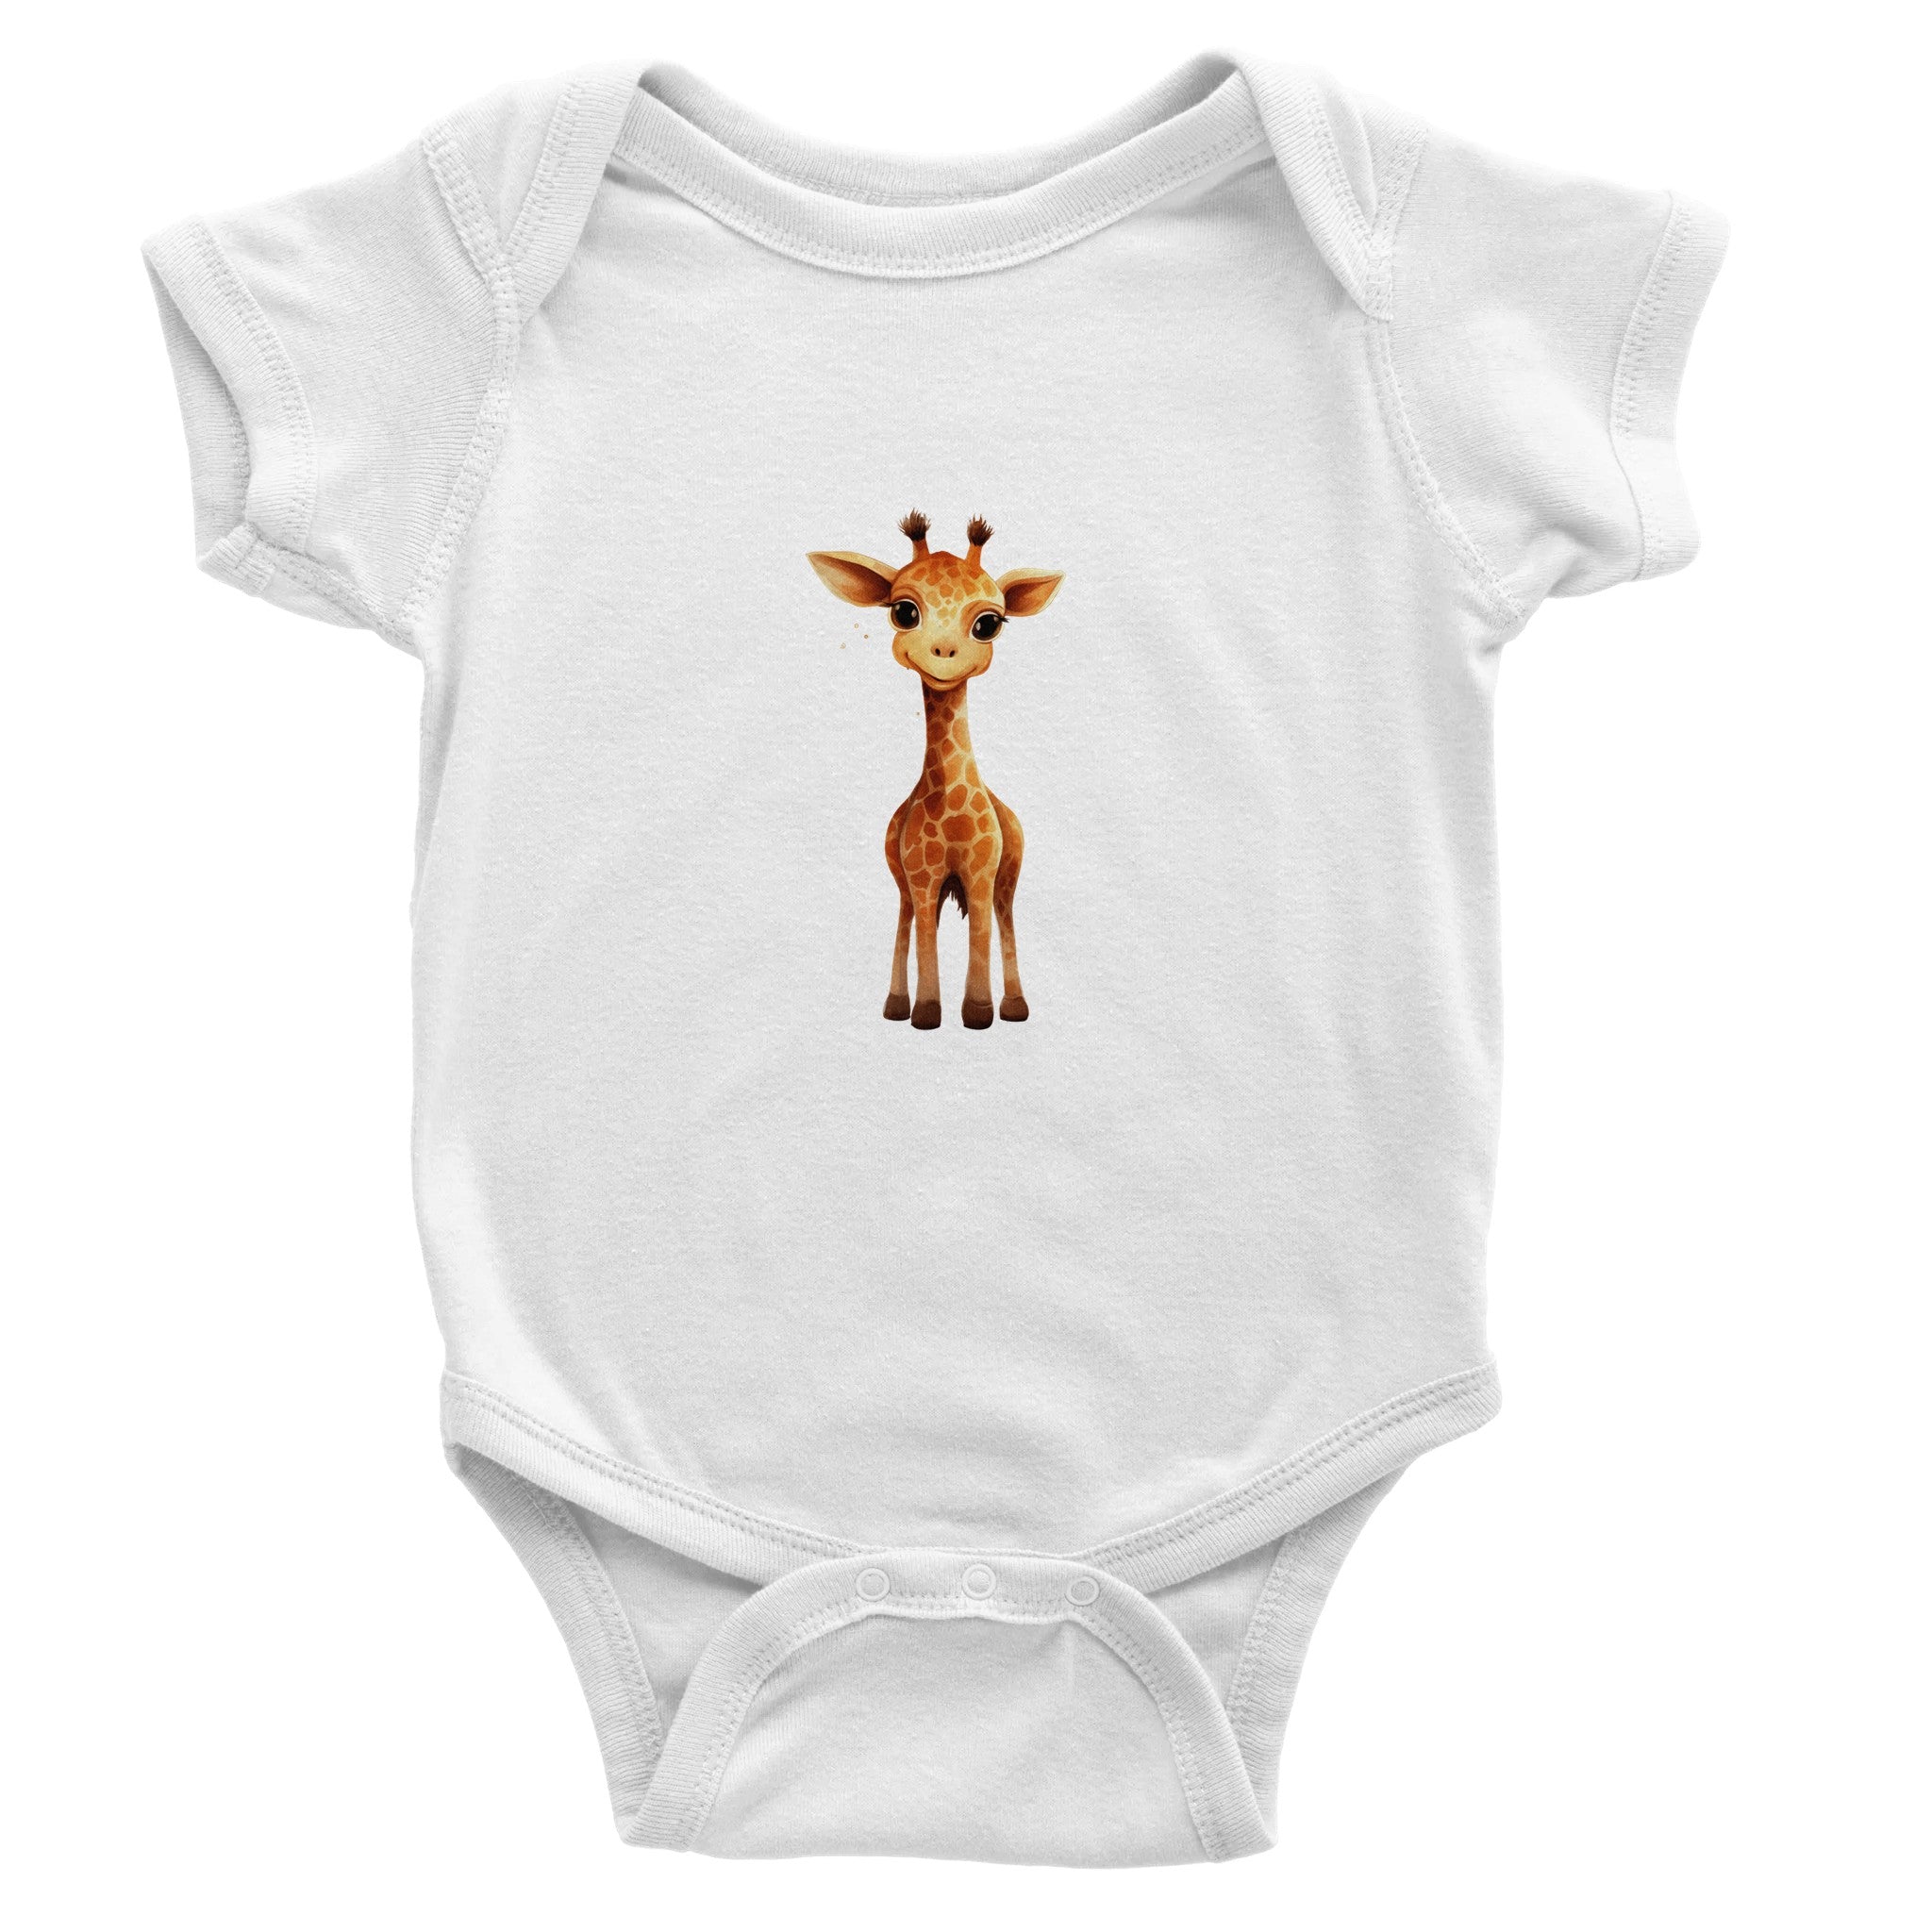 Gentle Eyed Giraffelet Baby Short Sleeve Bodysuit - Optimalprint